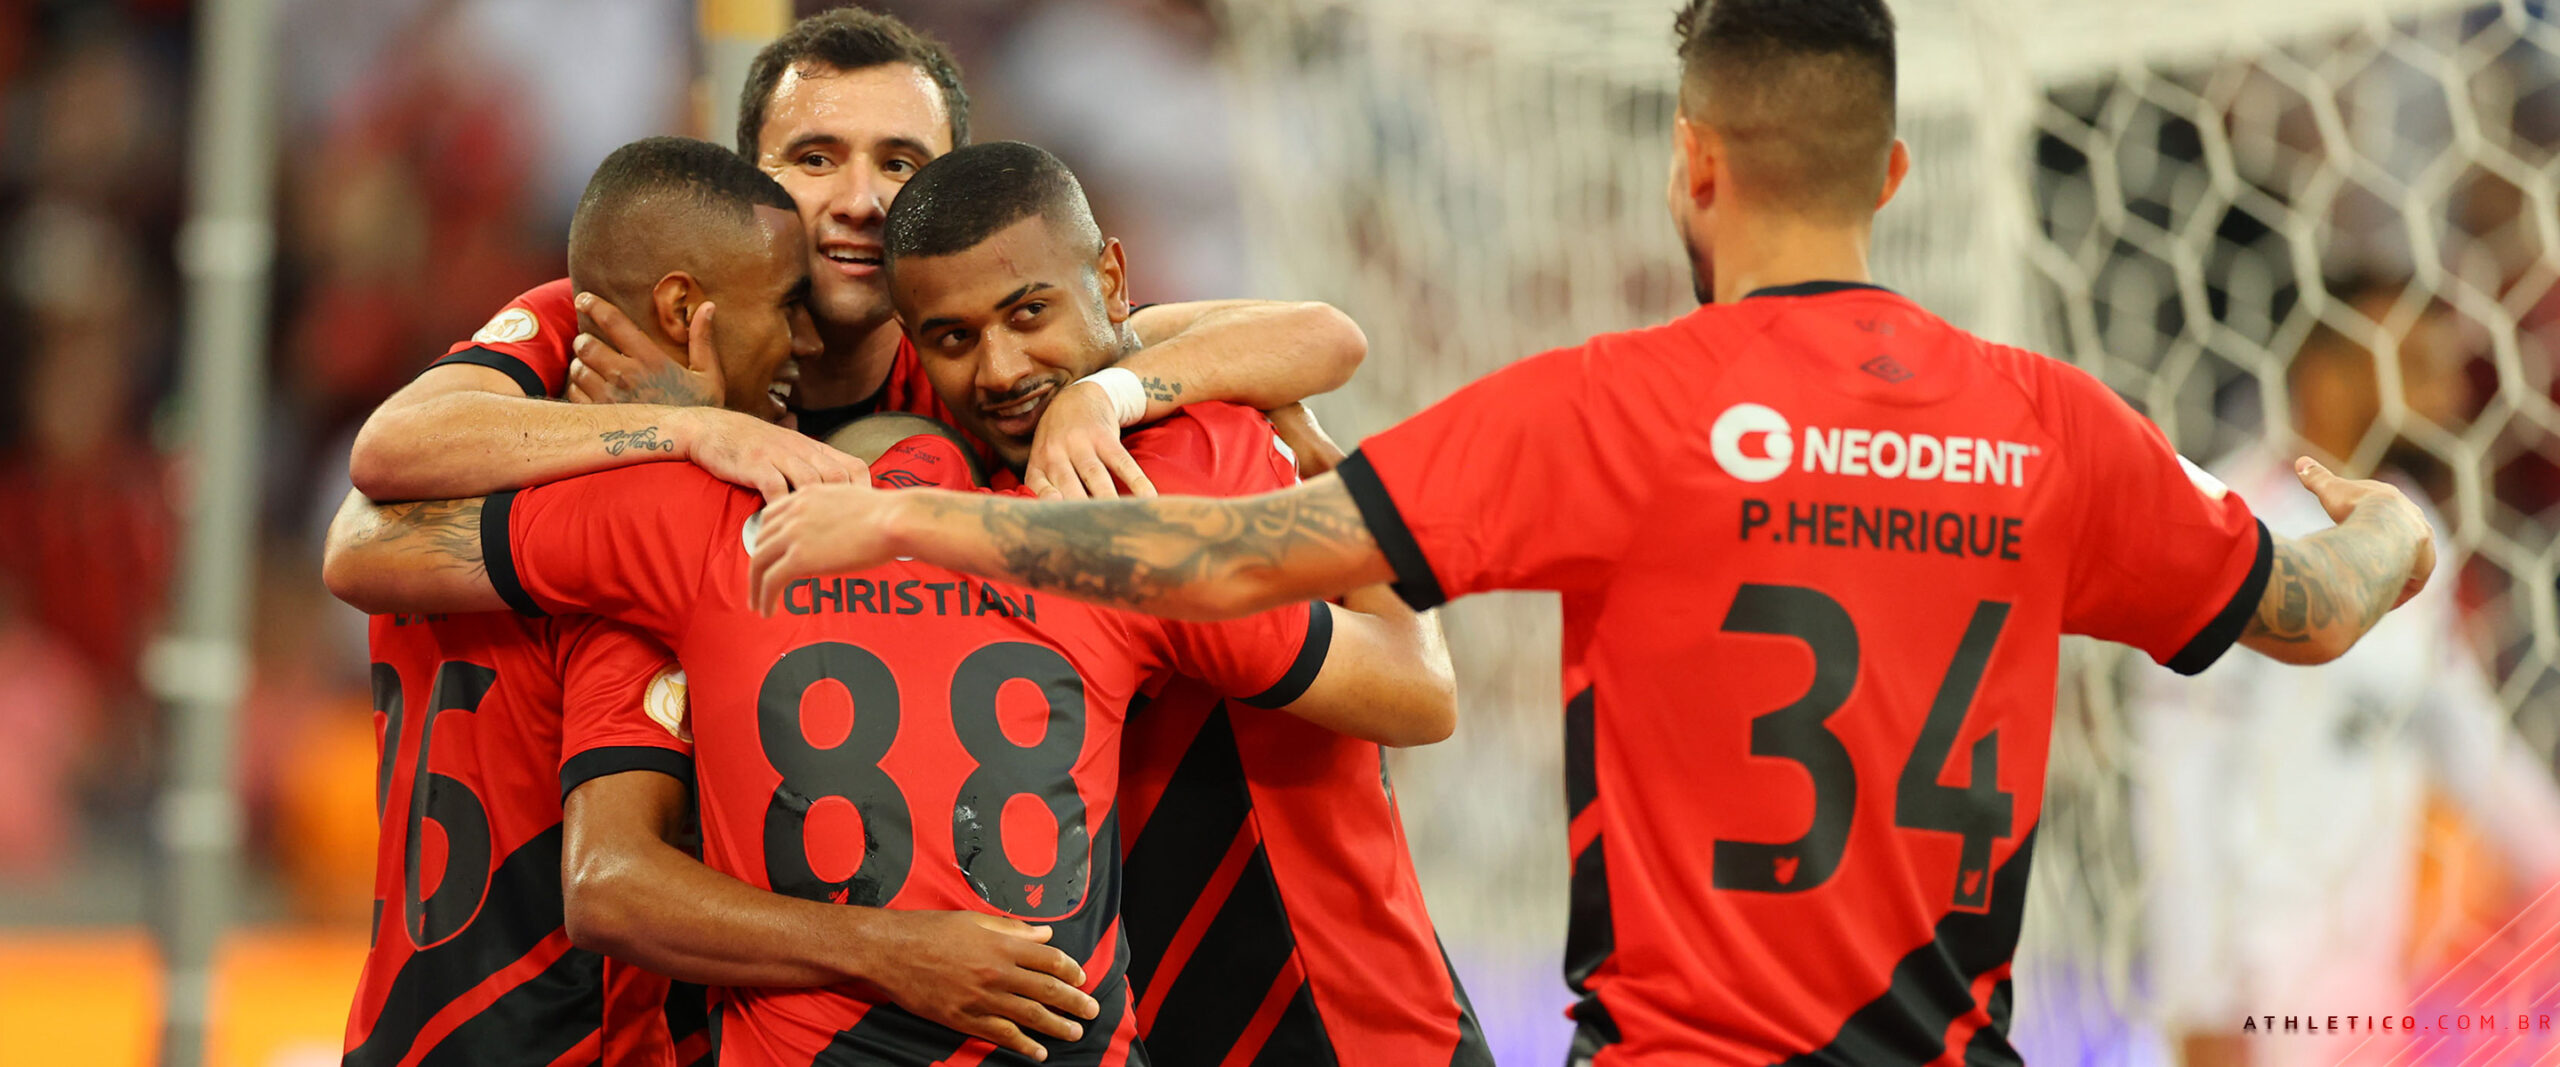 Torcedor do Athletico é flagrado em atos racistas contra torcida do Flamengo